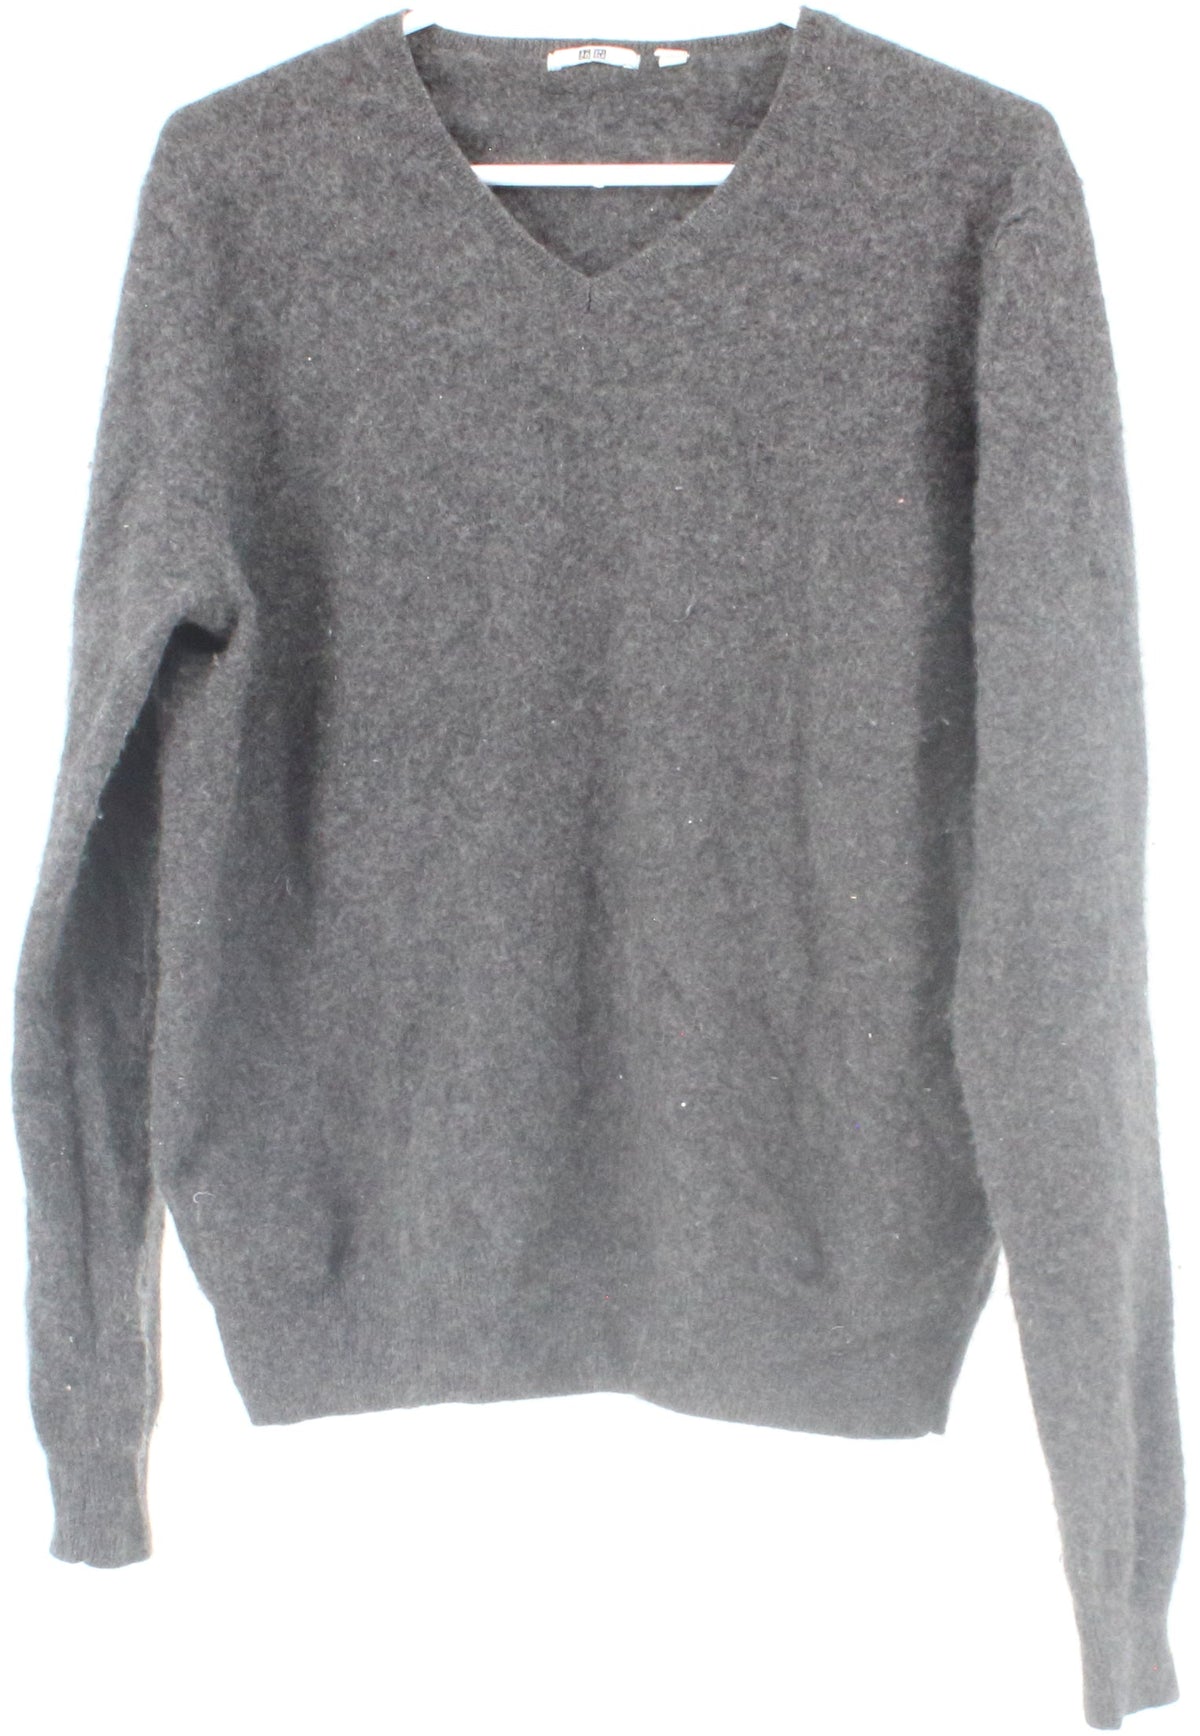 Uniqlo Dark Grey V Neck Men's Sweater